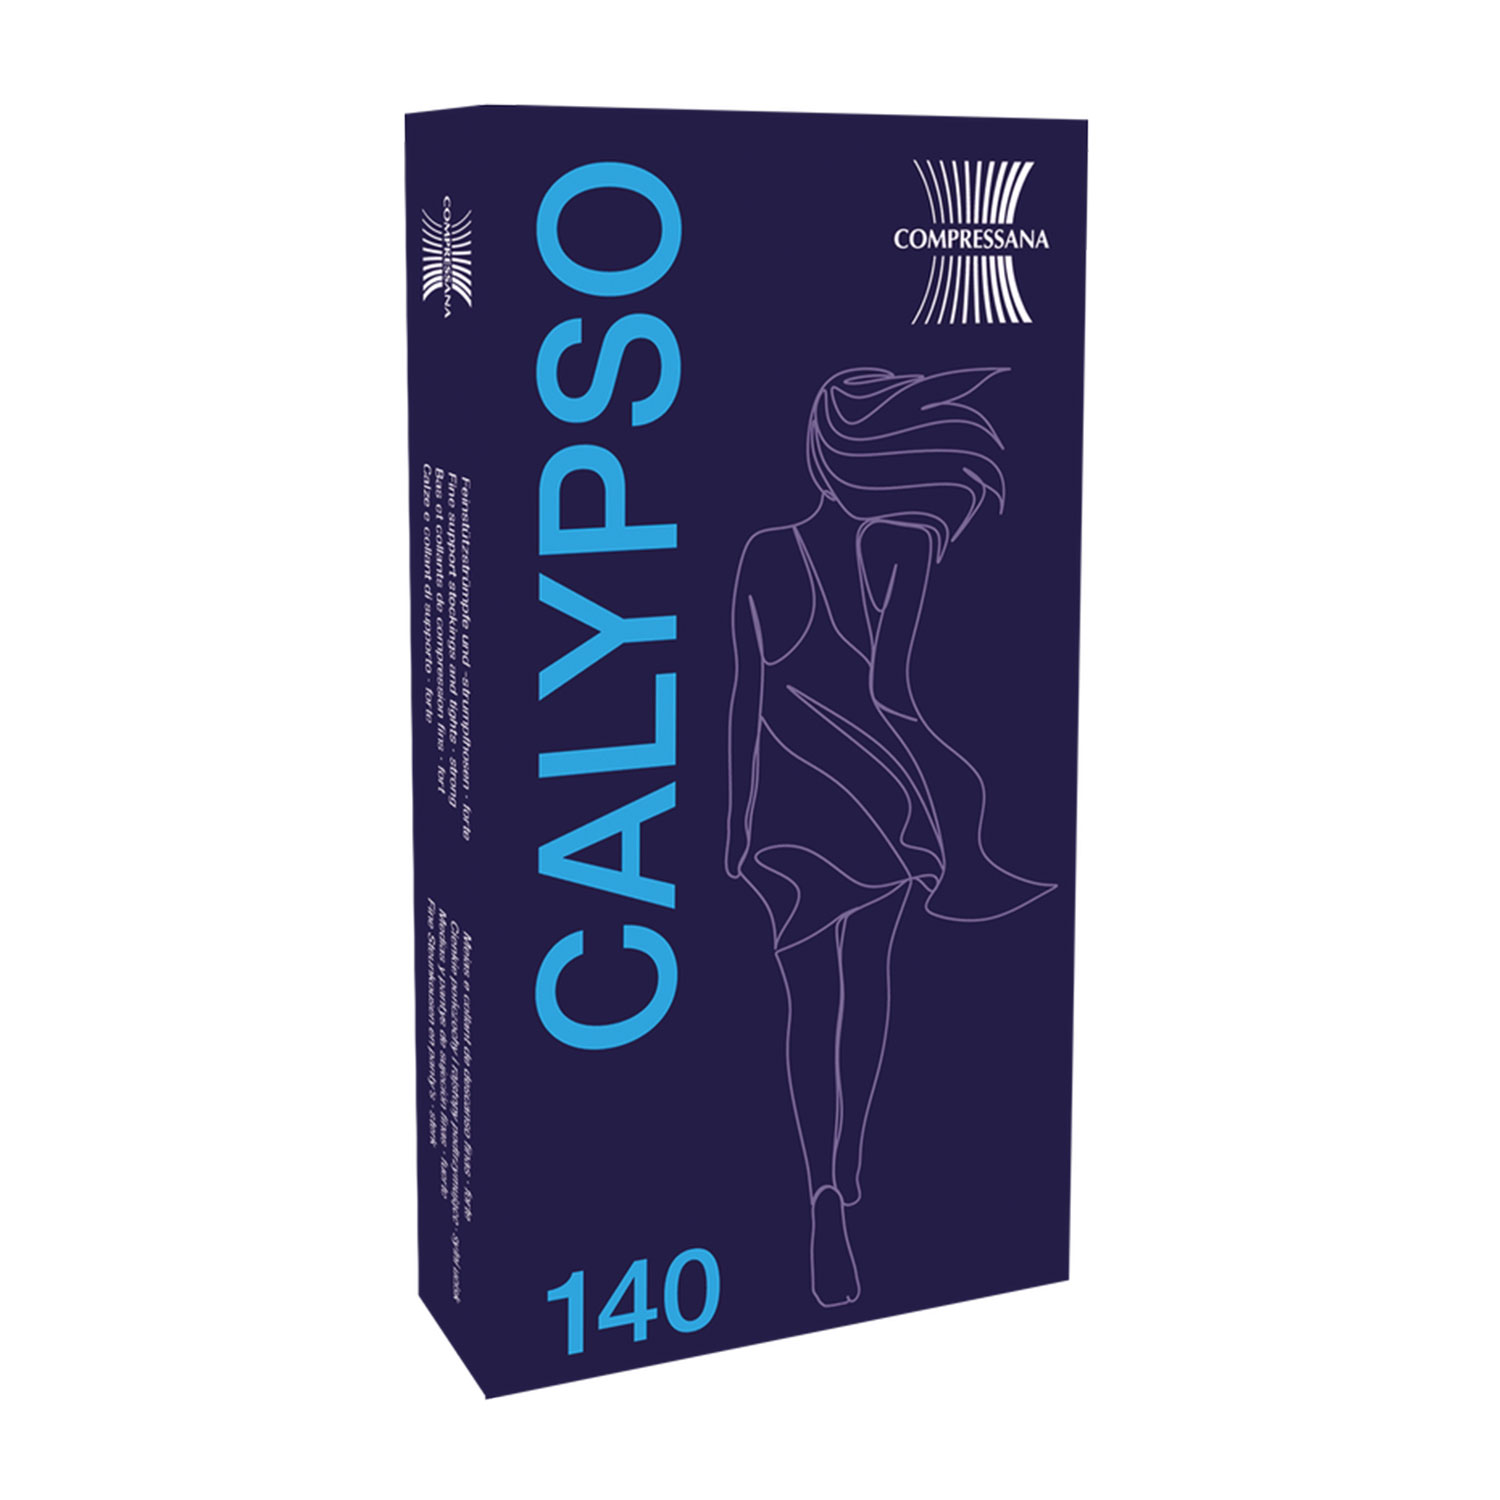 Kniestrümpfe - Fit für die Reise Calypso 140 den Compressana 